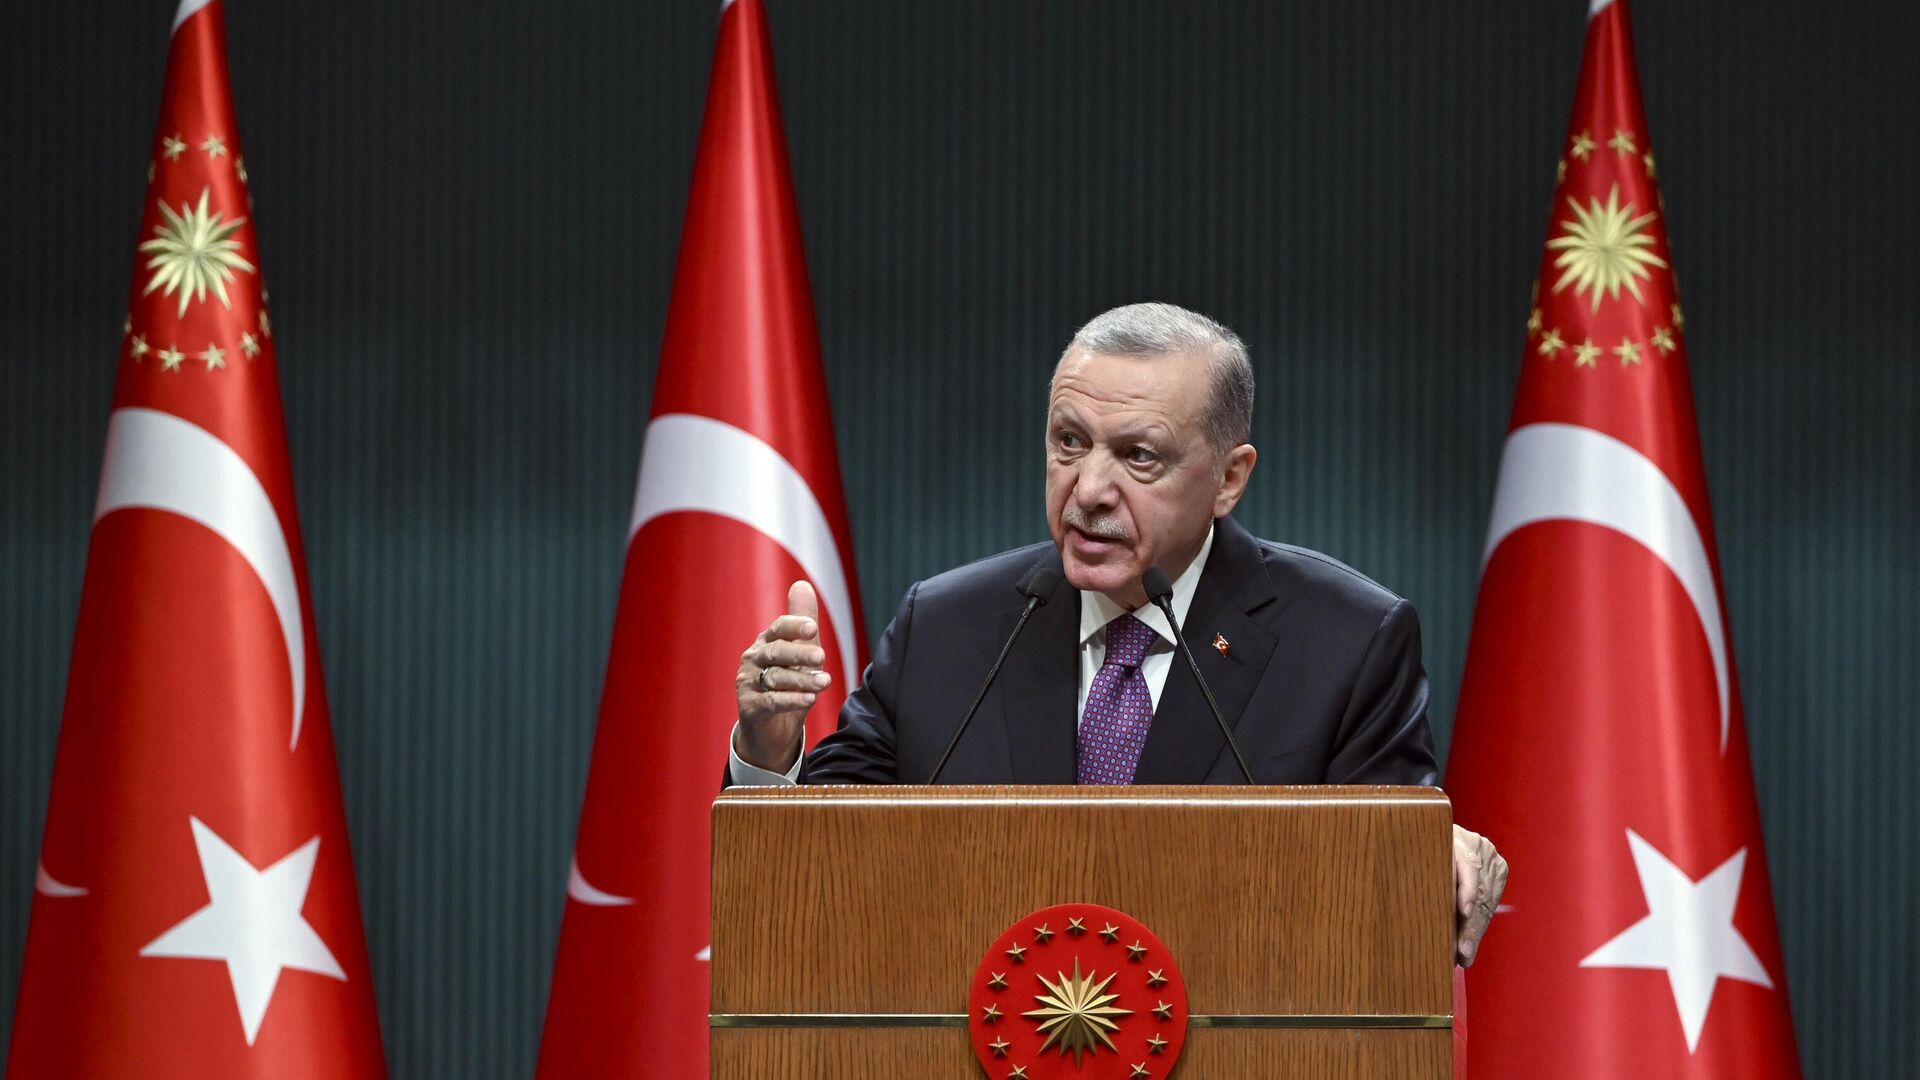 Enflasyon rakamlarının açıklanmasıyla birlikte yüzde 37.57 zam oranı kesinleşen emekliler için ek zam iddiaları gündeme geldi. Ekonomist Nedim Türkmen, Sözcü TV'de yaptığı açıklamada, Cumhurbaşkanı Erdoğan'ın emekli maaş zammına ekleme yapacağını belirterek hem oran hem de tarih verdi. Türkmen, "Cumhurbaşkanı Erdoğan üstünü tamamlayacaktır" dedi. Ekonomist Türkmen'in açıklamaları şu şekilde: "Emekliler şu an için yüzde 37.56 zam alacak. Cumhurbaşkanı Erdoğan üstünü tamamlayacaktır ancak Şubat ayında tamamlayacak. Yasa çıkması gerekiyor. Şubat ayının ortasına doğru burada bir düzenleme ile refah payıyla bunun yüzde 50'ye tamamlayacağını söyleyebiliriz. En düşük emekli maaşının 7 bin 500 TL'den 12 bin 500 TL'ye çıkarılacağını düşünüyorum. Bu temel aylık ücreti olacak ama bazıları 13 bin-14 bin TL alacak." Sizce 12 bin 500 TL yeterli mi? Aşağıdaki yorumlar kısmından yazın. Emekliye zam düzenlemesi nasıl olacak? Kök maaş zammı, en düşük emekli maaşı ve refah payı düzenlemesi gibi ihtimaller en öne çıkan formüller arasında. Ancak tüm bunlar için Meclis düzenlemesi gerekiyor. Meclis ise 16 Ocak tarihine kadar tatilde. Meclis kapalı olsa da milyonların yeni aylıkları için acil toplantı yapması bekleniyor. Çünkü SSK emeklileri ayın 17’si ile 26’sı, Bağ-Kur'lular ise her ayın 25’i ile 28’i arasında emekli maaşı ödemesini alıyor. Memur emeklileri ise maaşlarını her ayın 1’i ila 5’i arasında alıyor. Dolayısıyla ilk ödemenin 17 Ocak’ta olması için Meclis’in en geç 16 Ocak’ta düzenlemeyi uygulamaya sokması gerekiyor."